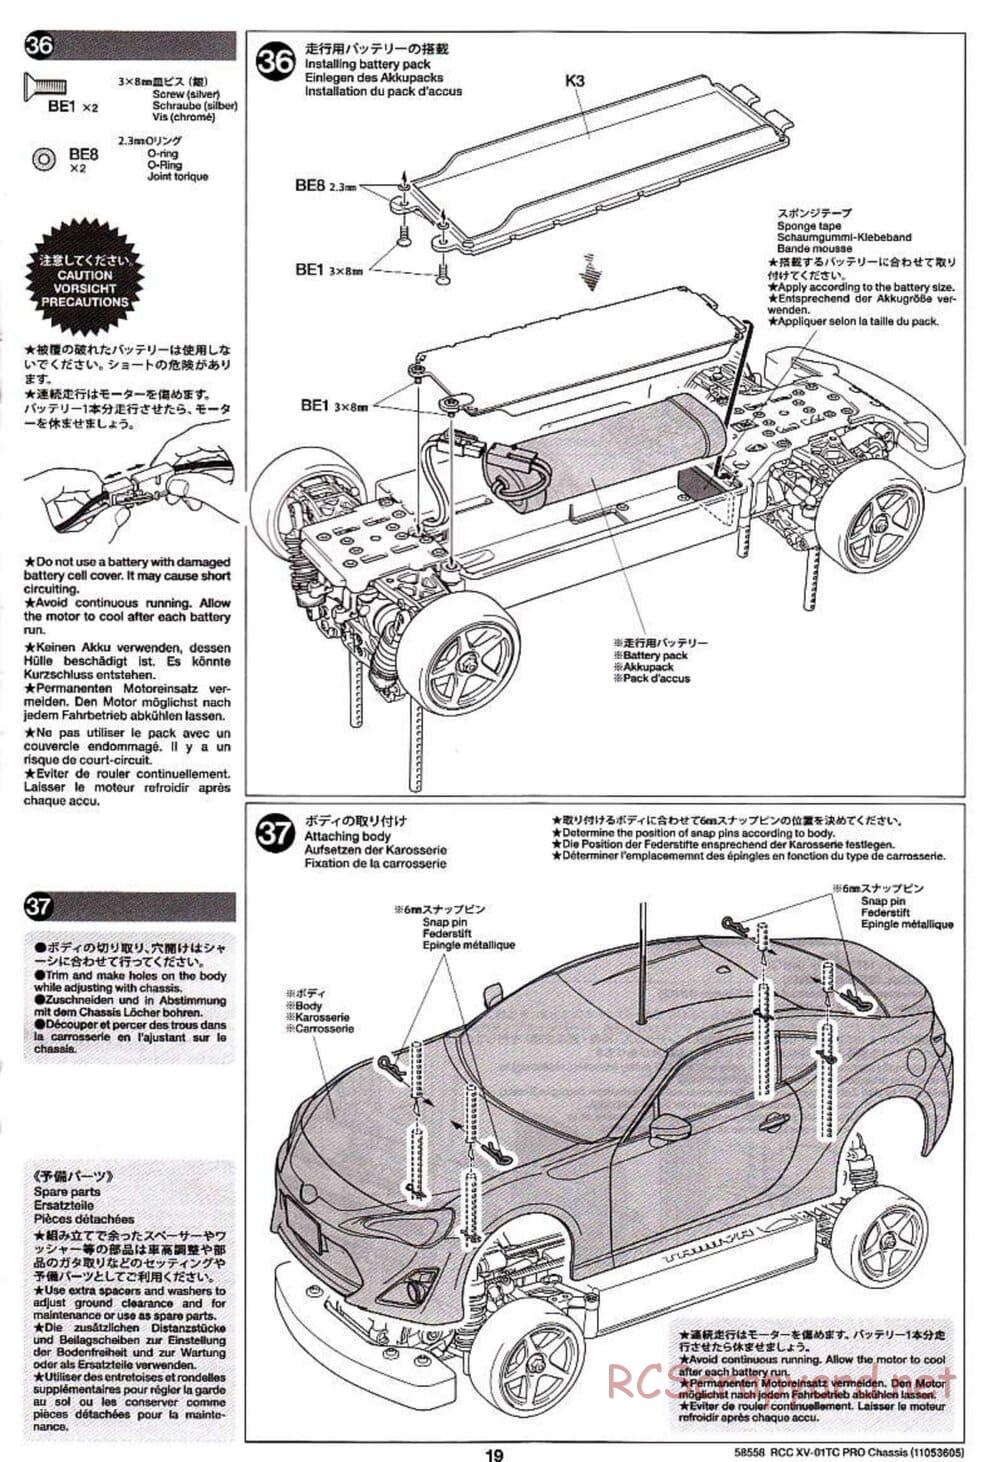 Tamiya - XV-01TC Chassis - Manual - Page 19